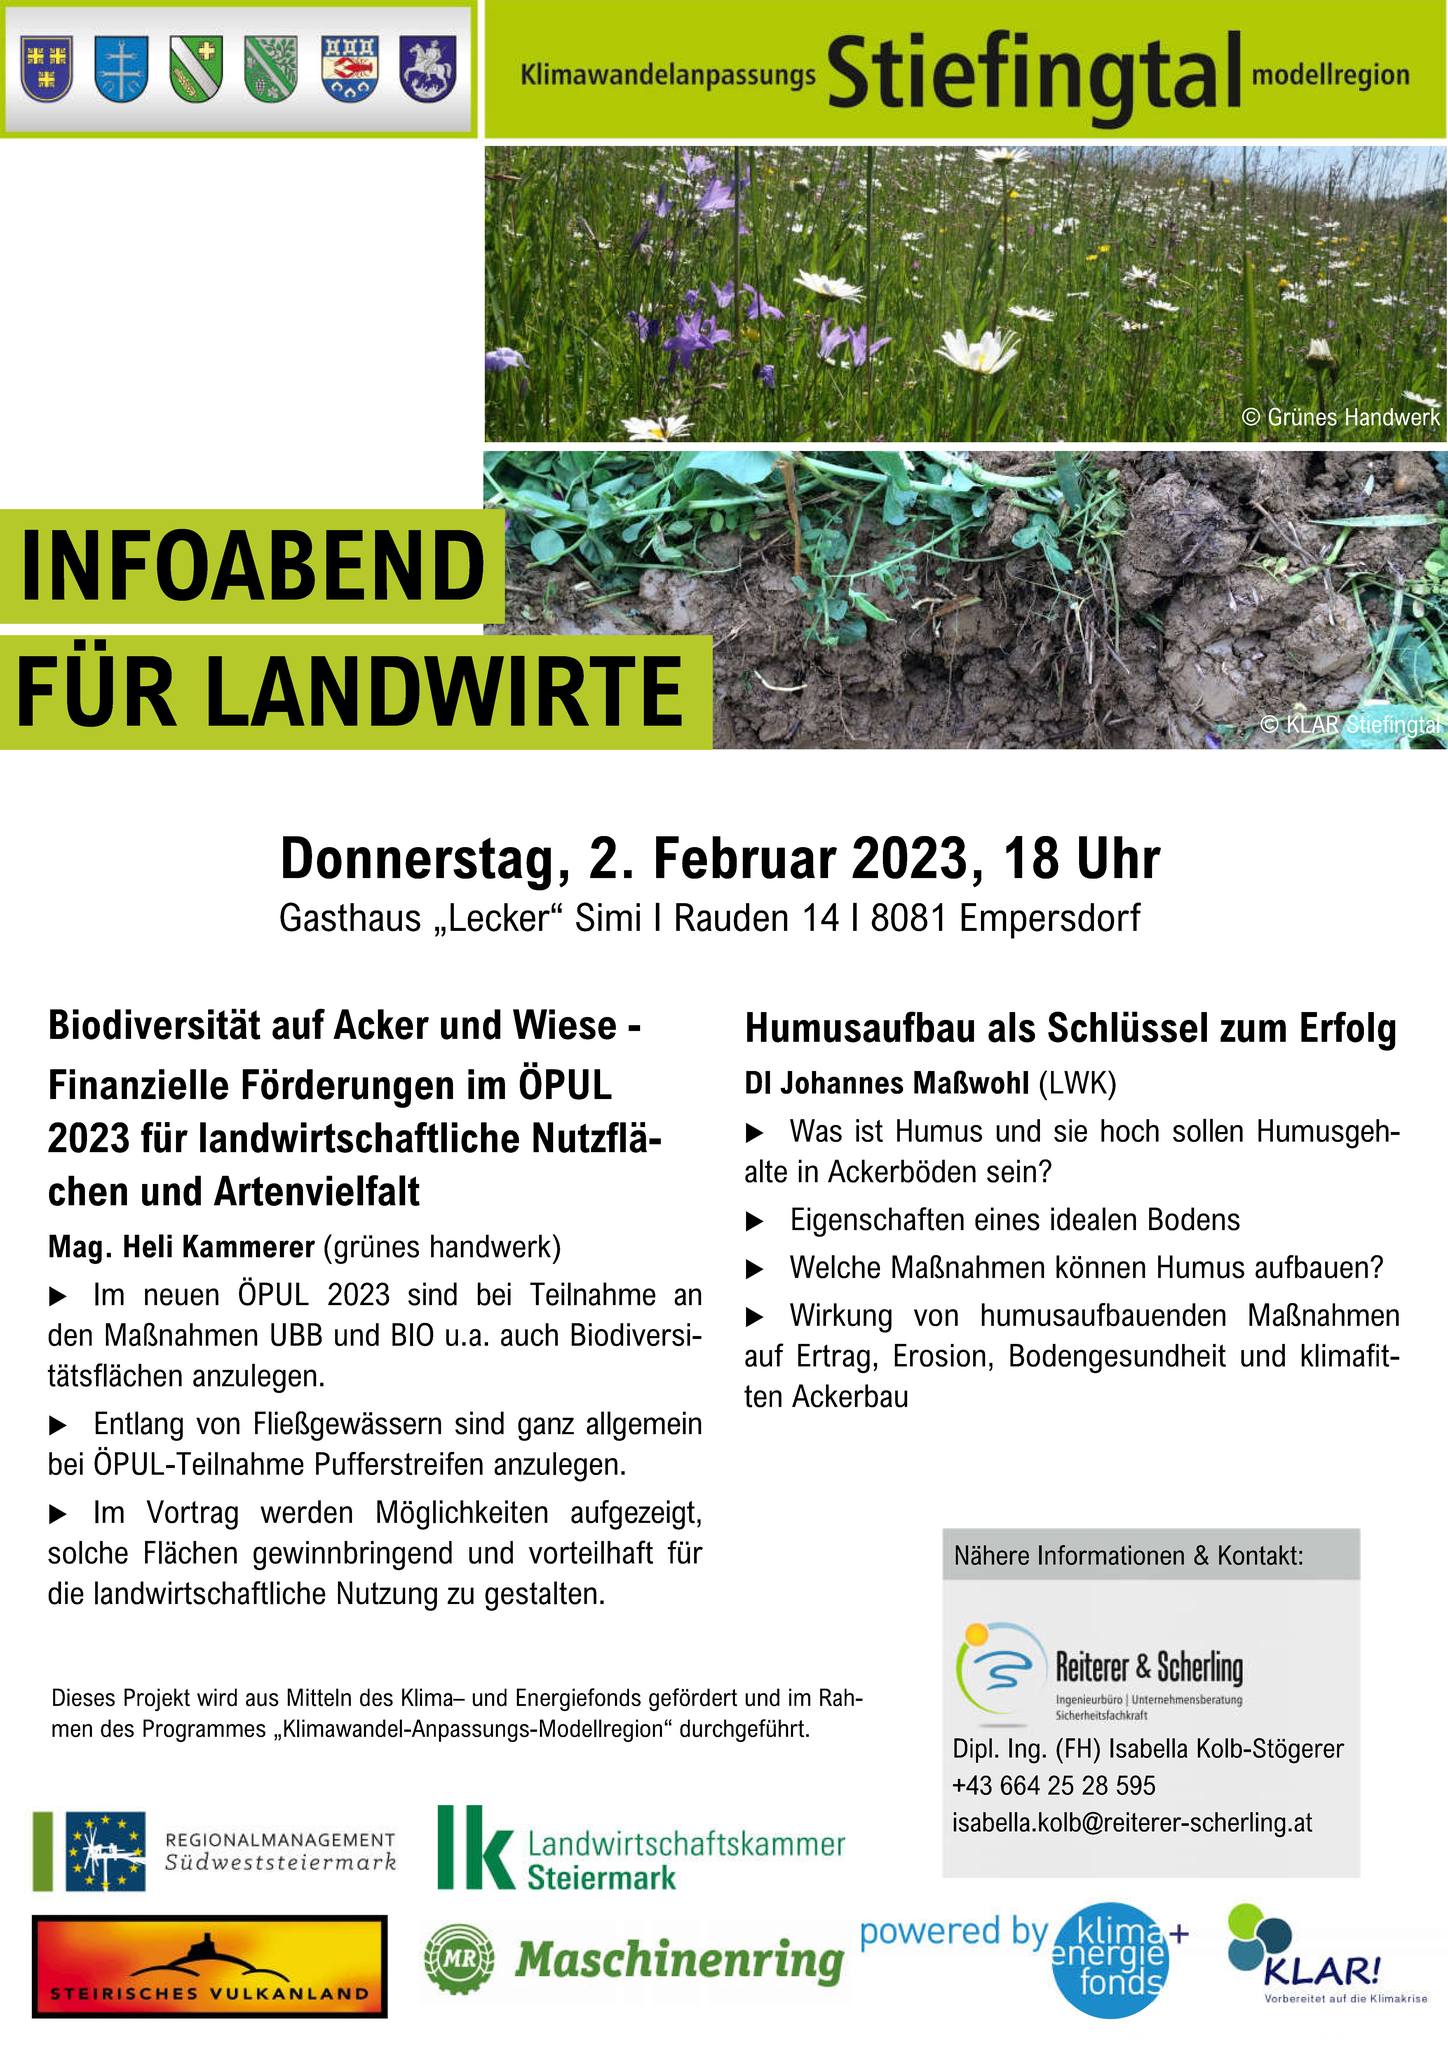 Infoabend für Landwirte in Empersdorf – Biodiversität auf Acker und Wiese & Humusaufbau als Erfolgsschlüssel